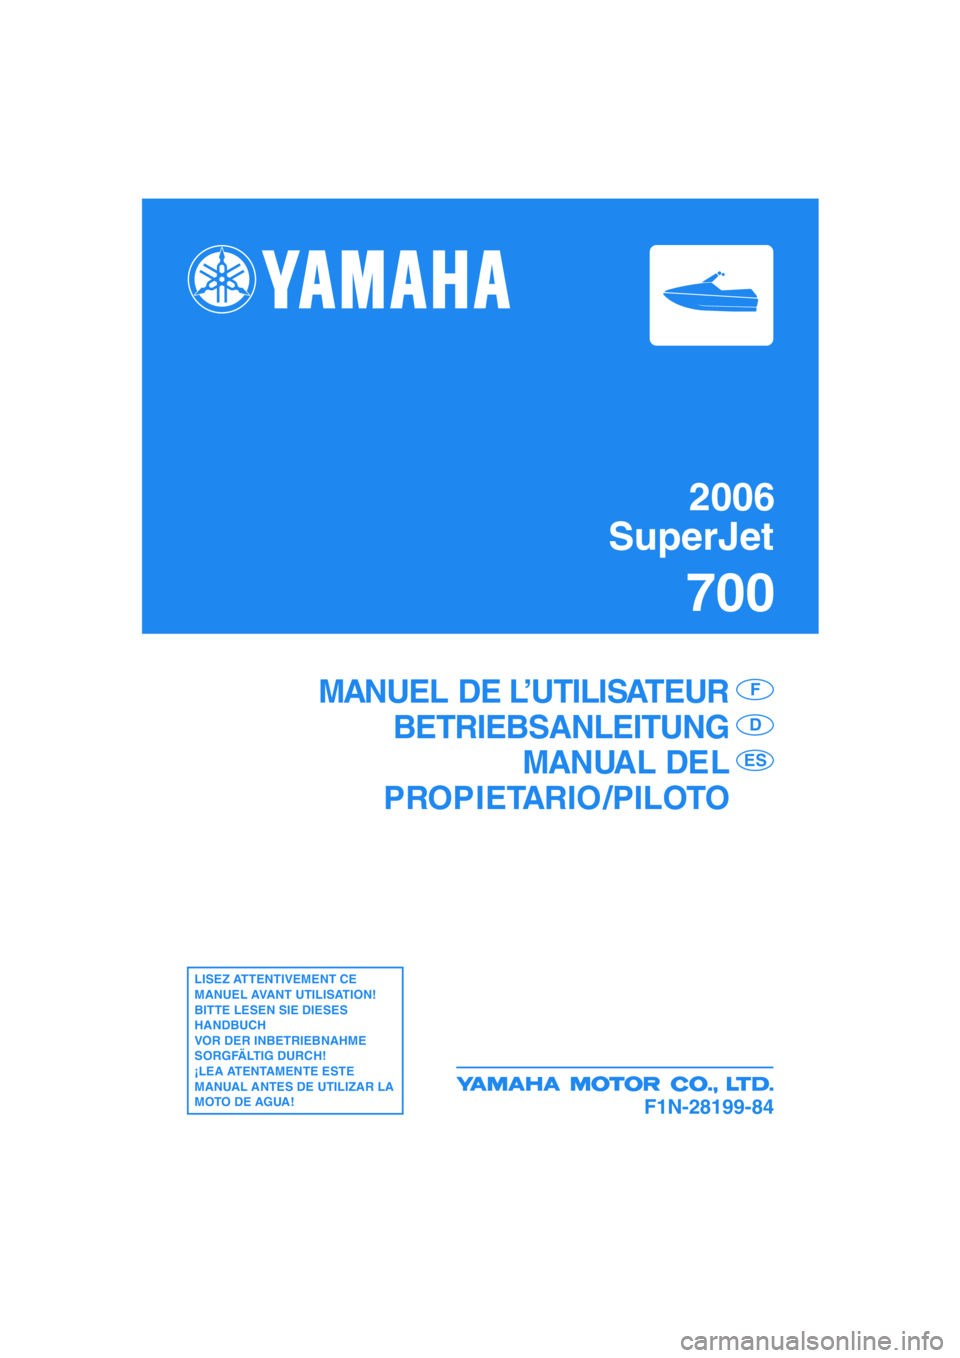 YAMAHA SUPERJET 2006  Manuale de Empleo (in Spanish) 2006
SuperJet
700
F1N-28199-84
MANUEL DE L’UTILISATEUR
BETRIEBSANLEITUNG
MANUAL DEL
PROPIETARIO /PILOTOF
D
ES
LISEZ ATTENTIVEMENT CE 
MANUEL AVANT UTILISATION!
BITTE LESEN SIE DIESES 
HANDBUCH 
VOR 